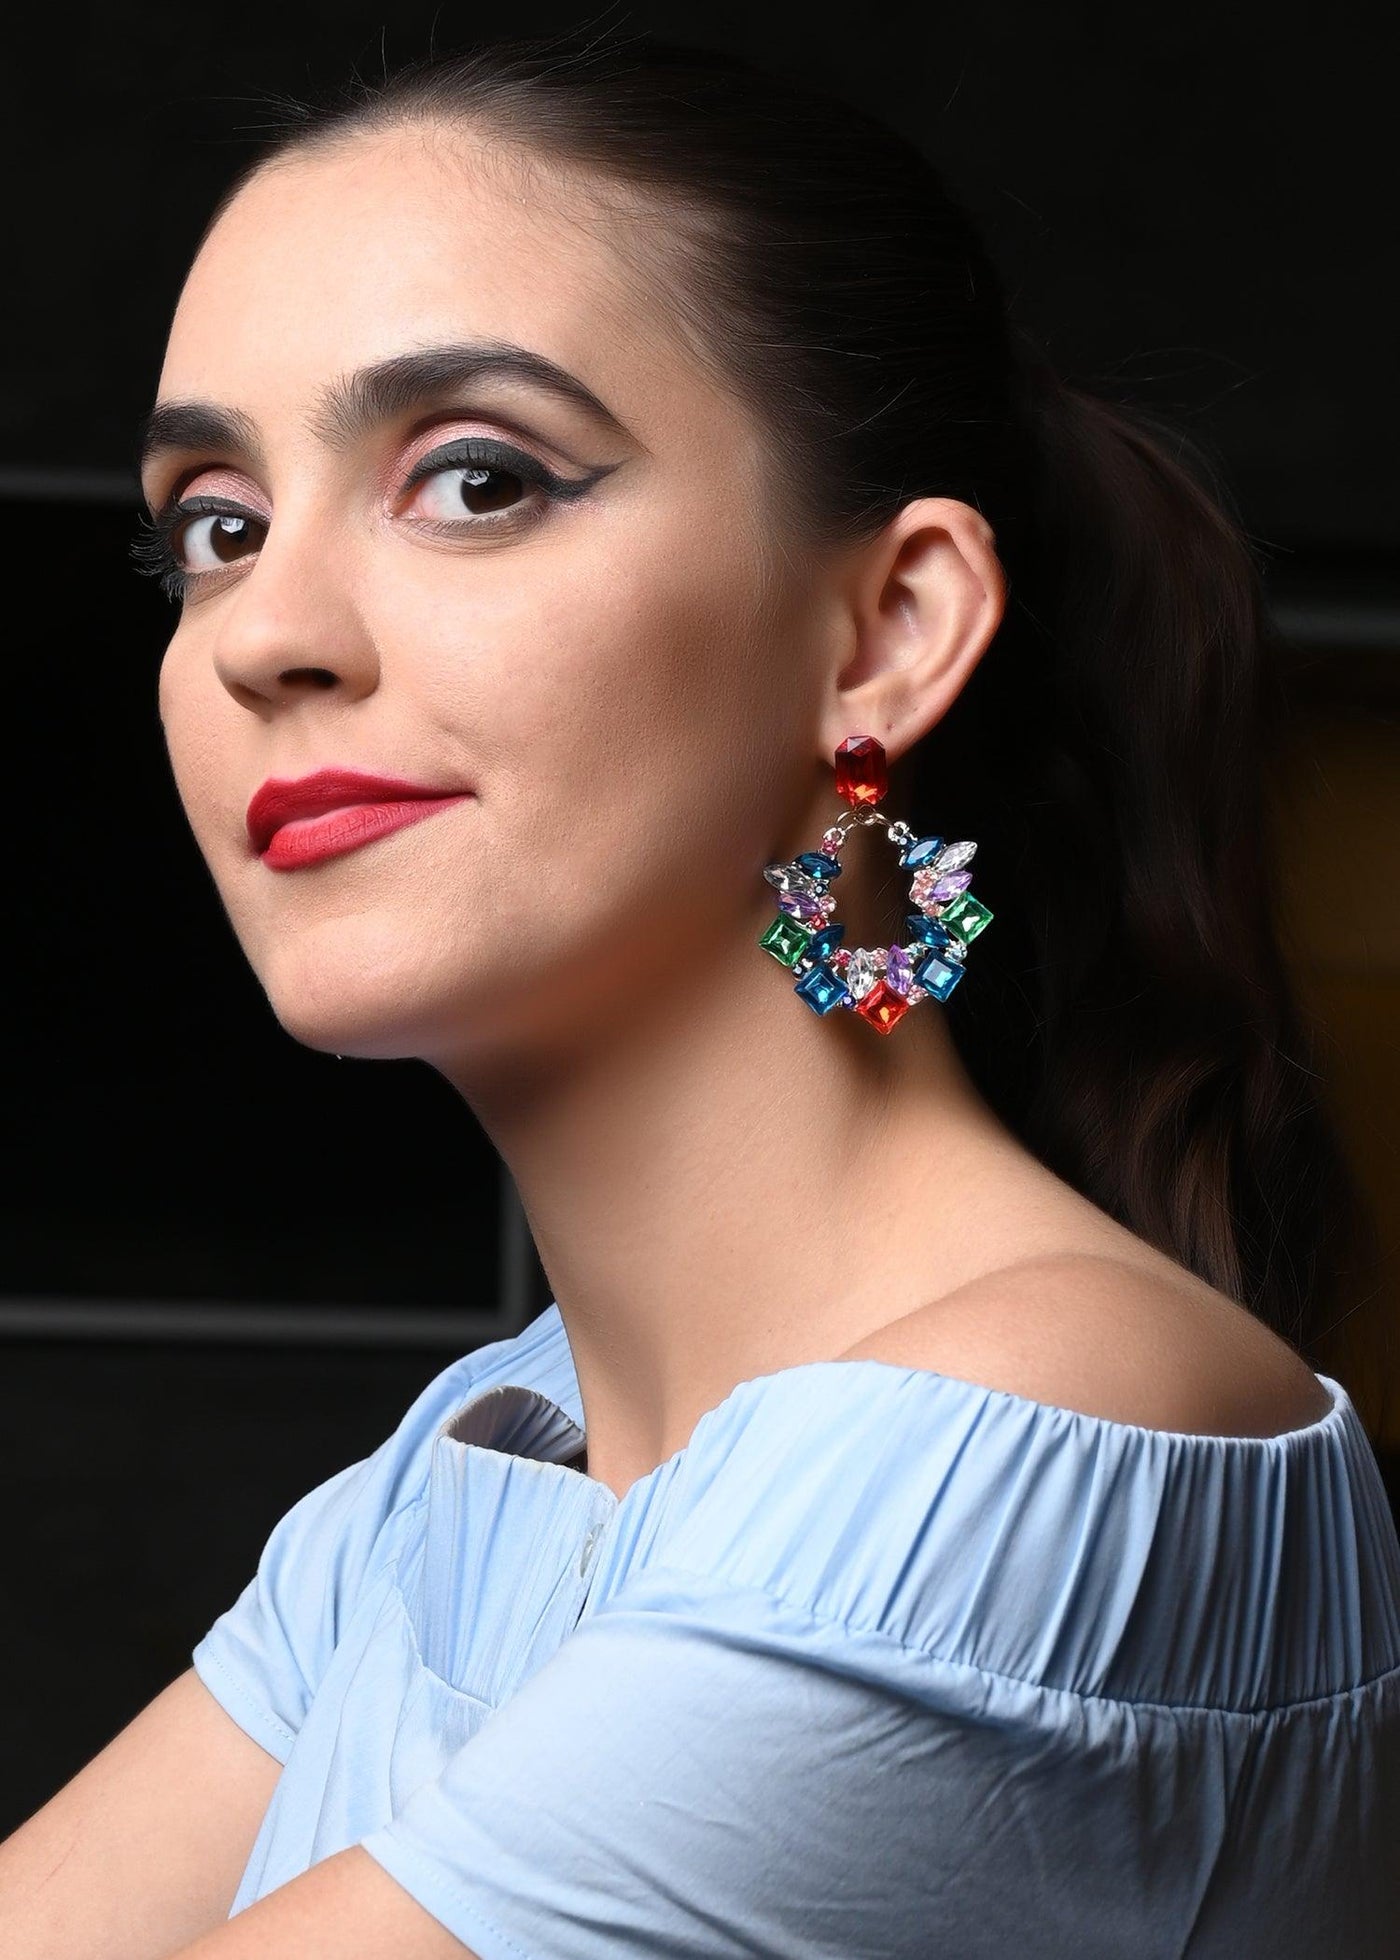 Multicolour Chandbali Pattern   Earring - Odette